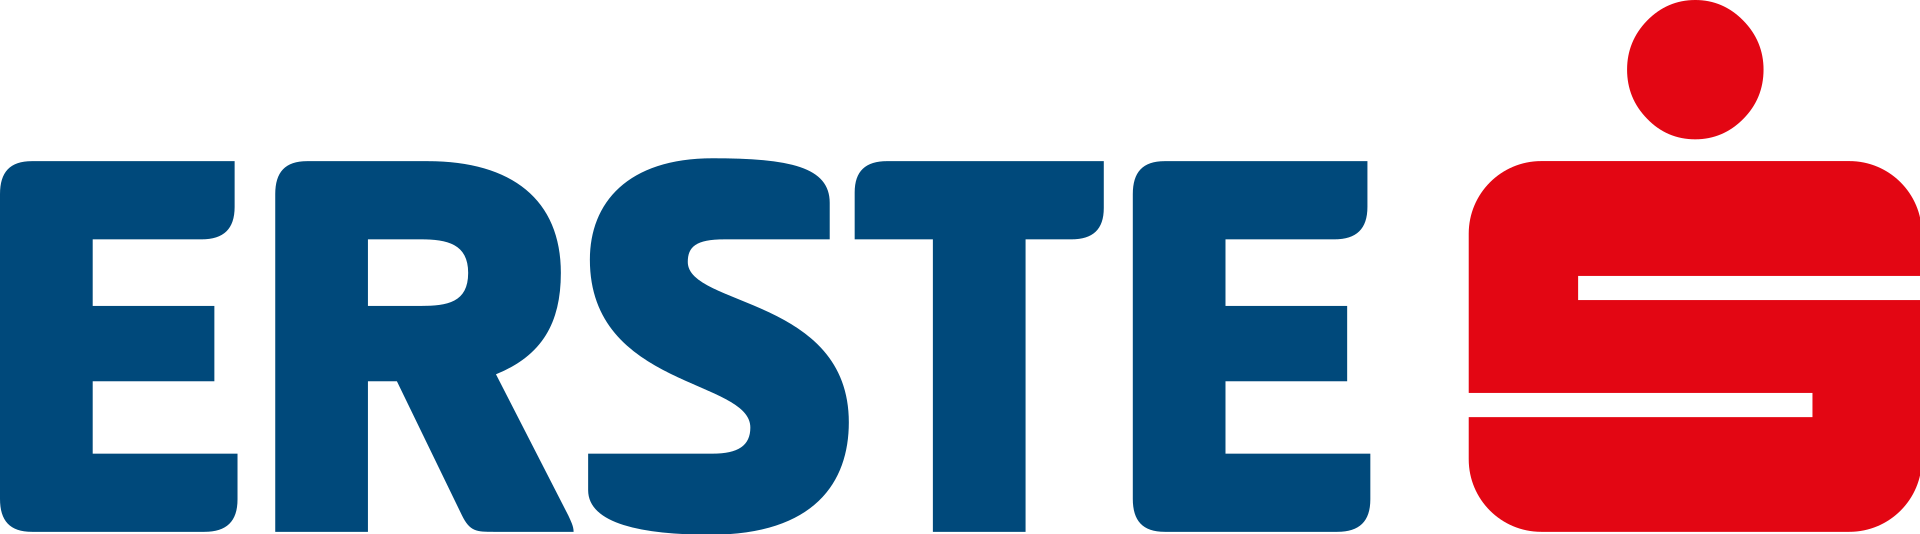 /new_img/1920px-Erste_Bank_Logo.svg.png